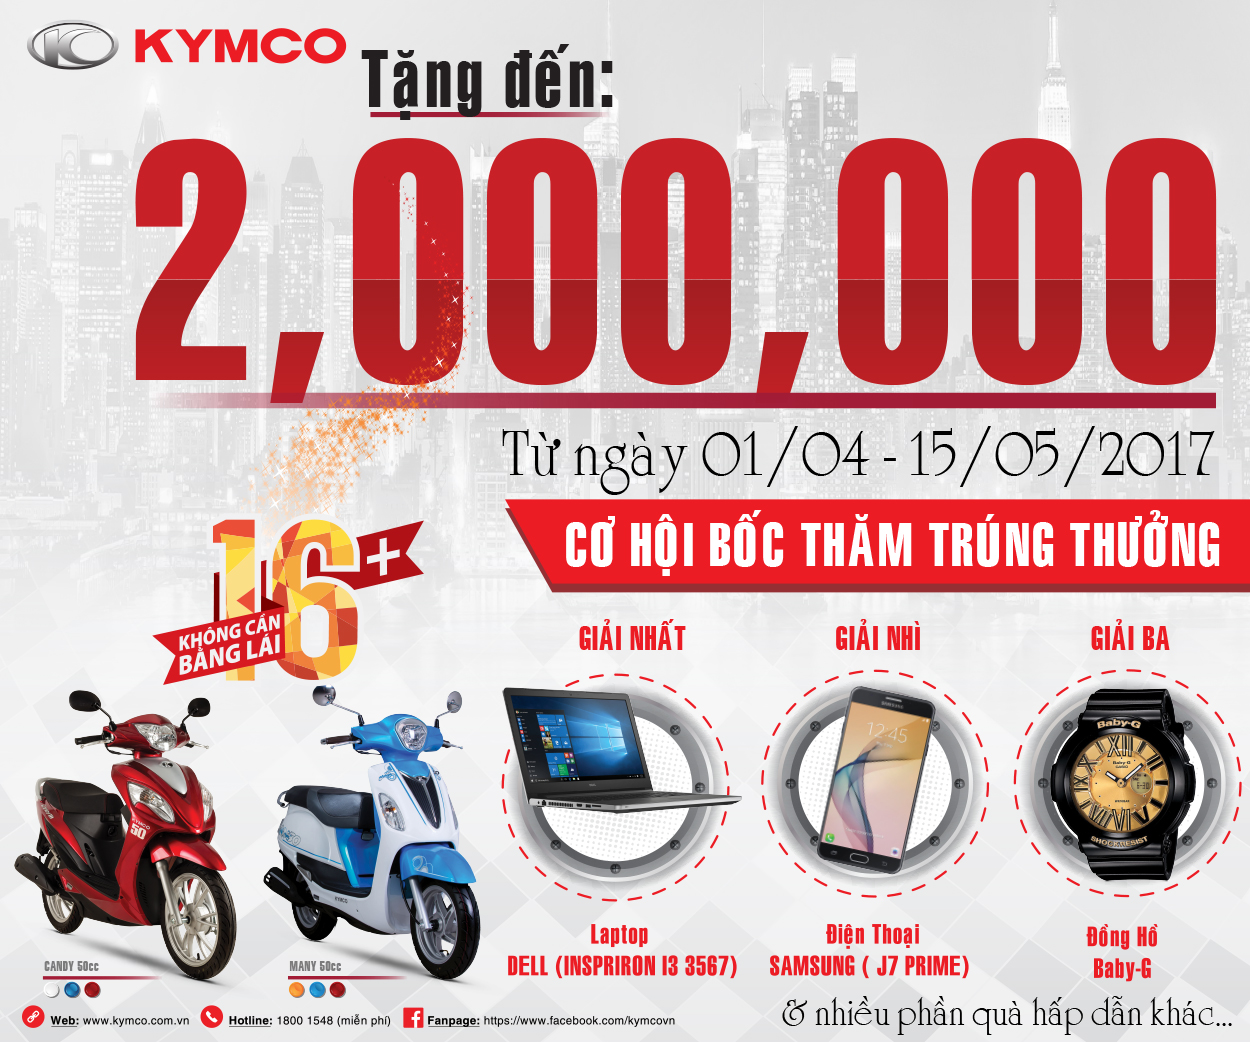 Kymco tung gói quà tặng hấp dẫn khi mua xe Many 50cc và Candy 50cc